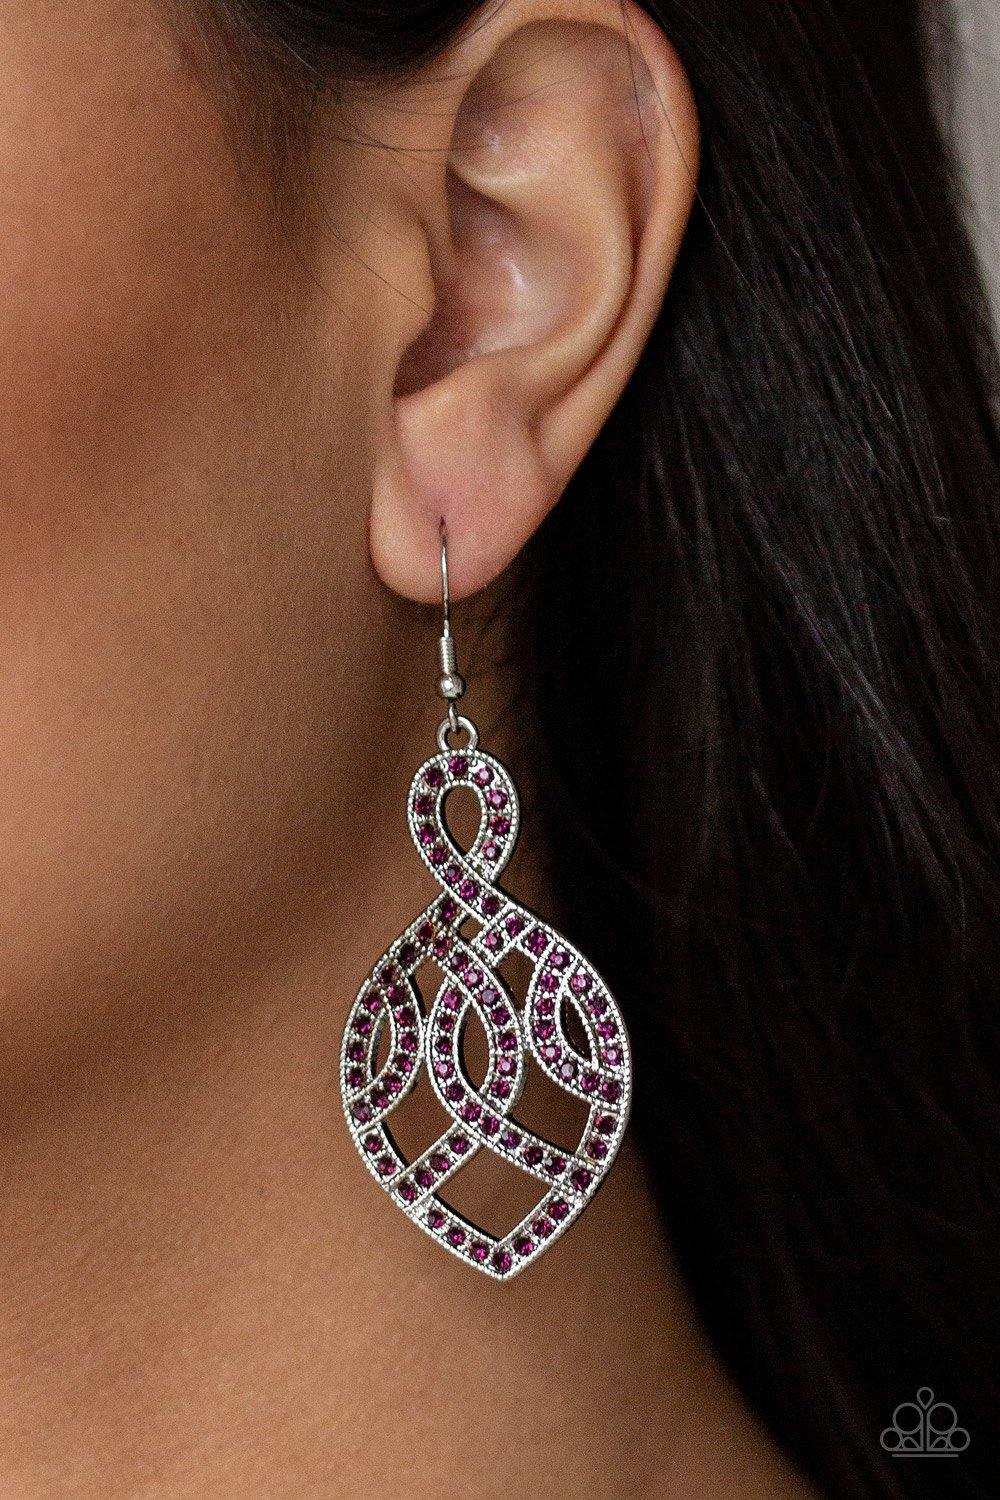 A Grand Statement Purple Earrings - Nothin' But Jewelry by Mz. Netta